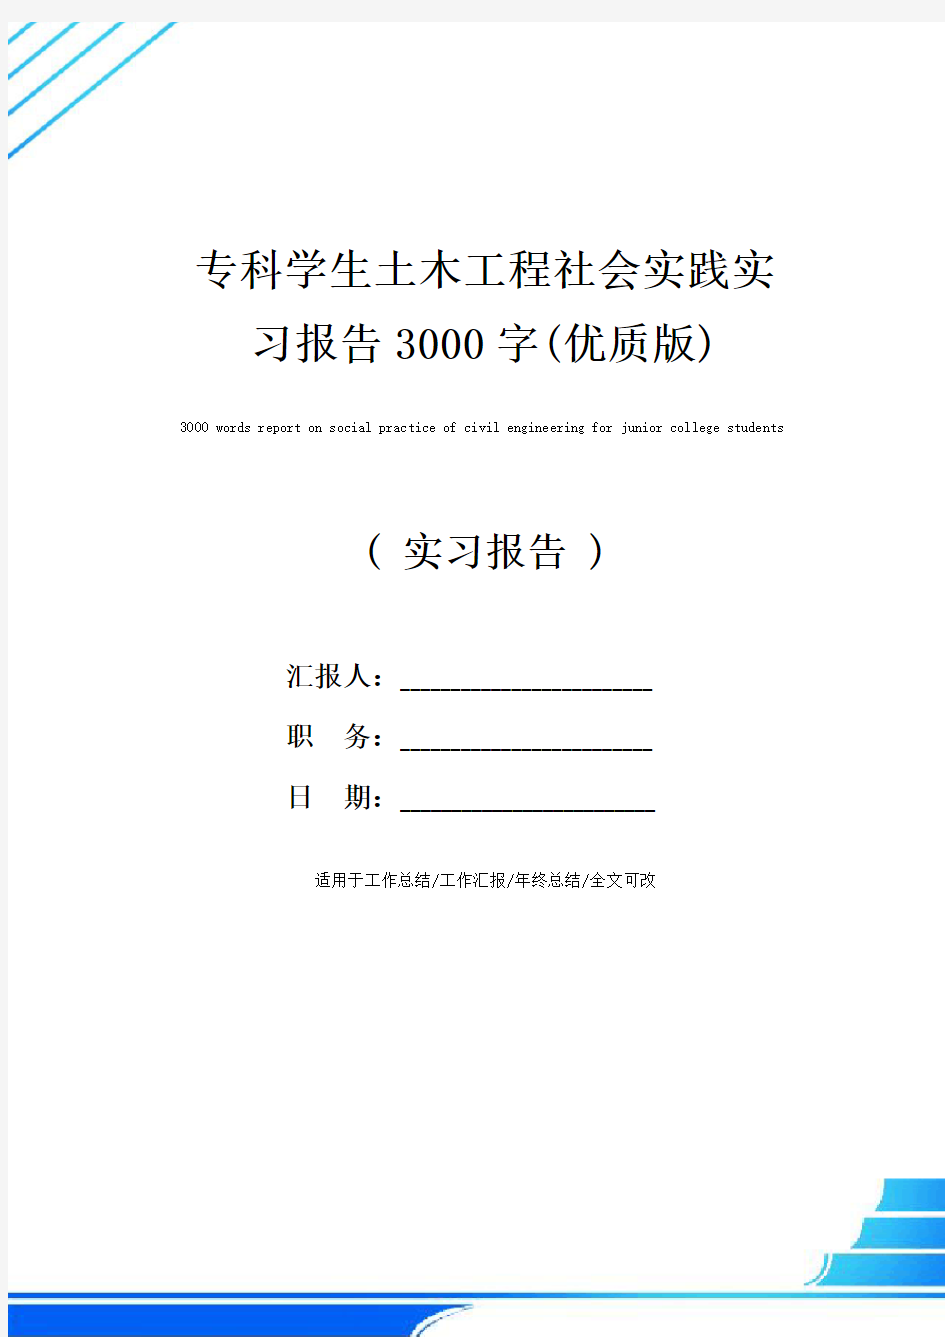 专科学生土木工程社会实践实习报告3000字(优质版)